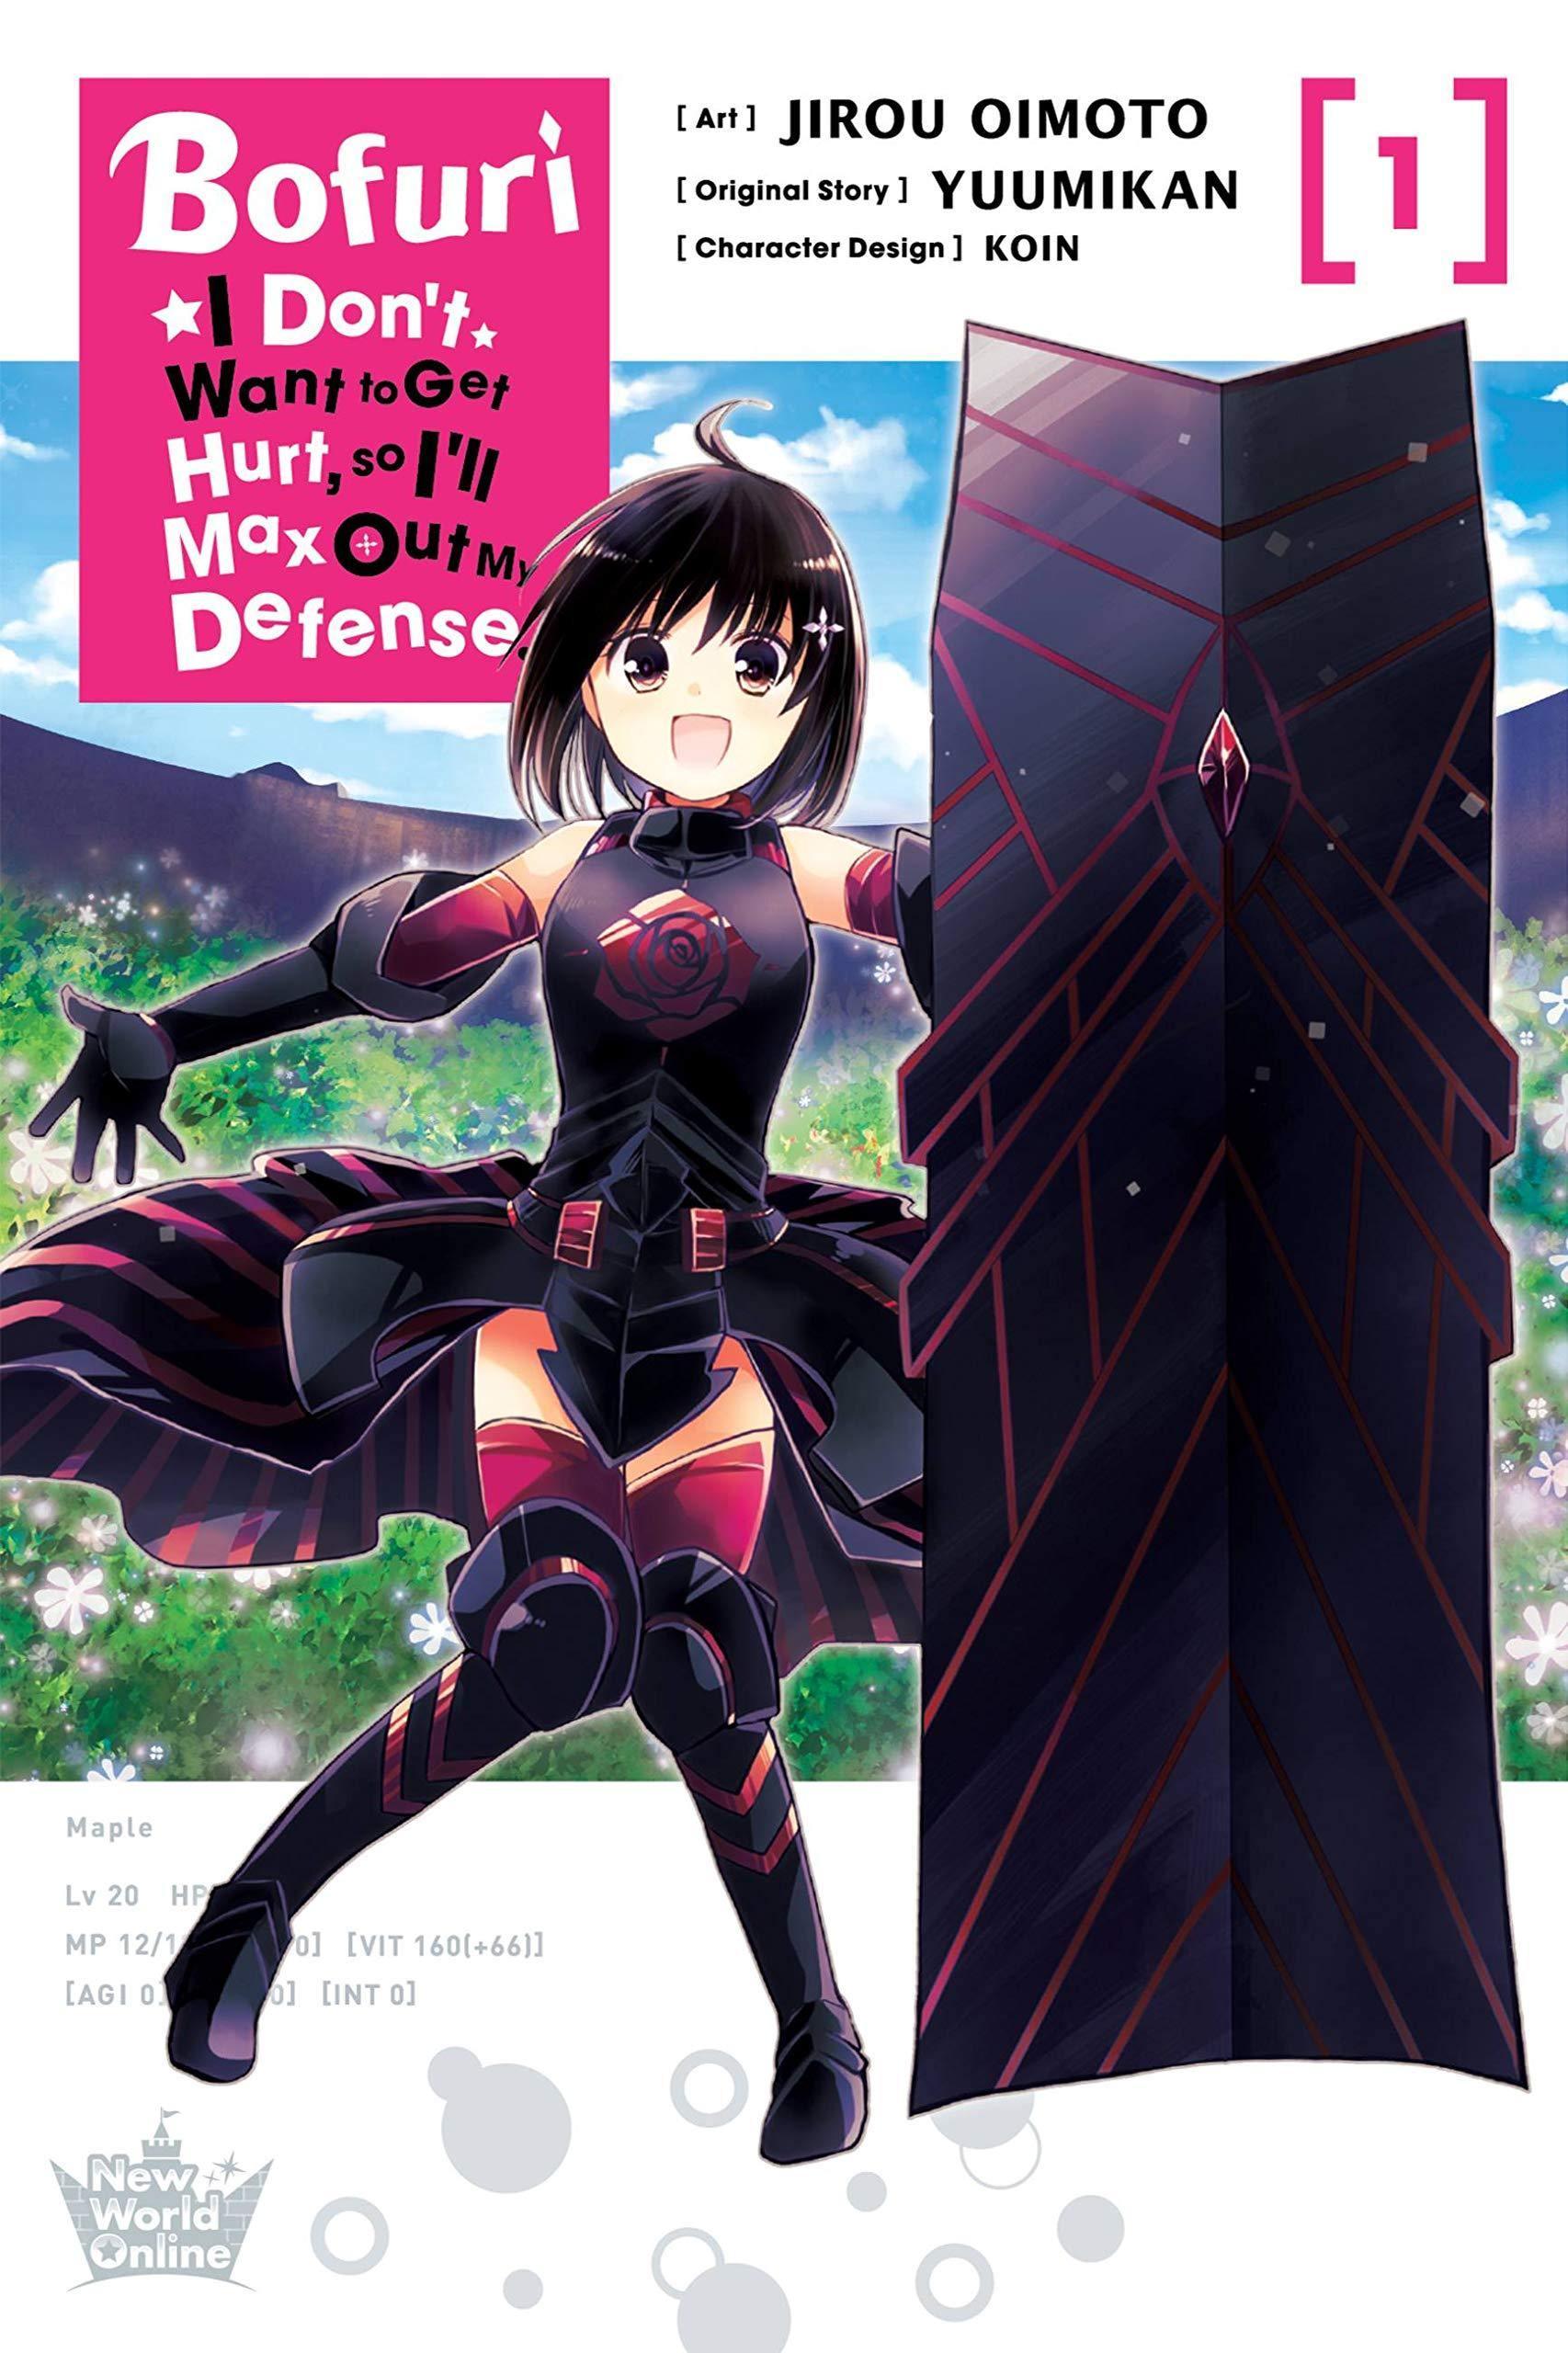 Bofuri: I Don't Want to Get Hurt, so I'll Max Out My Defense (Manga) Vol. 1 - Tankobonbon